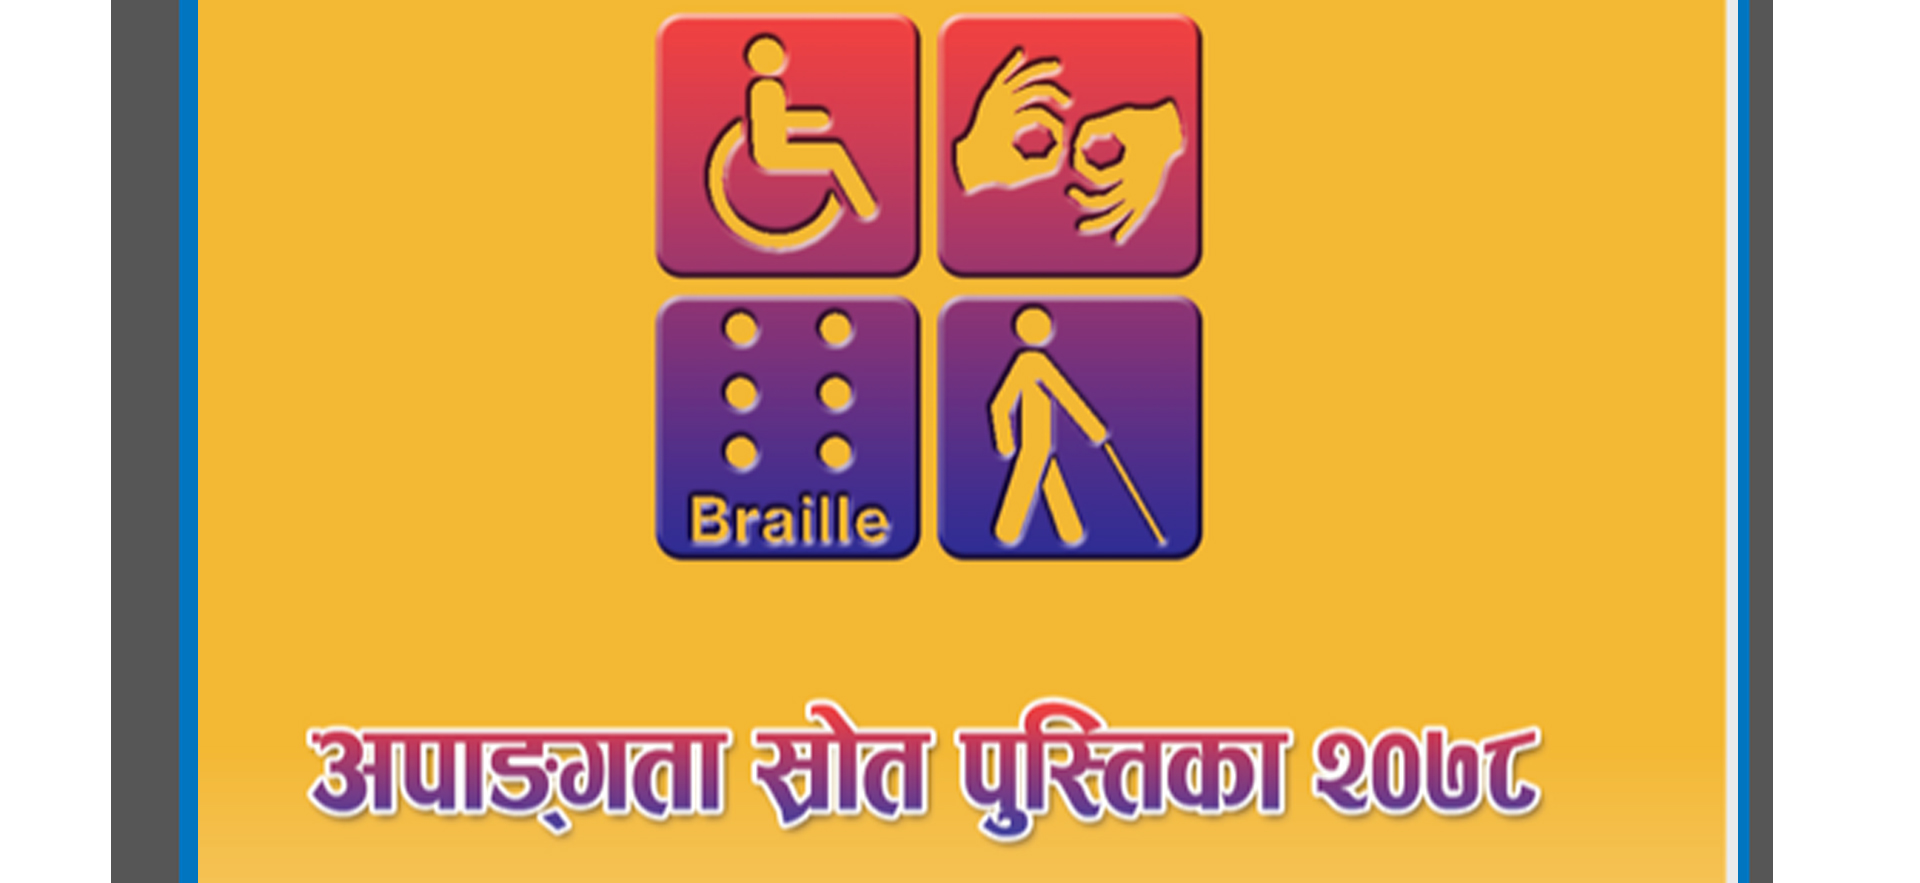 apanagata-sarata-pasataka-disability-resource-book-2021